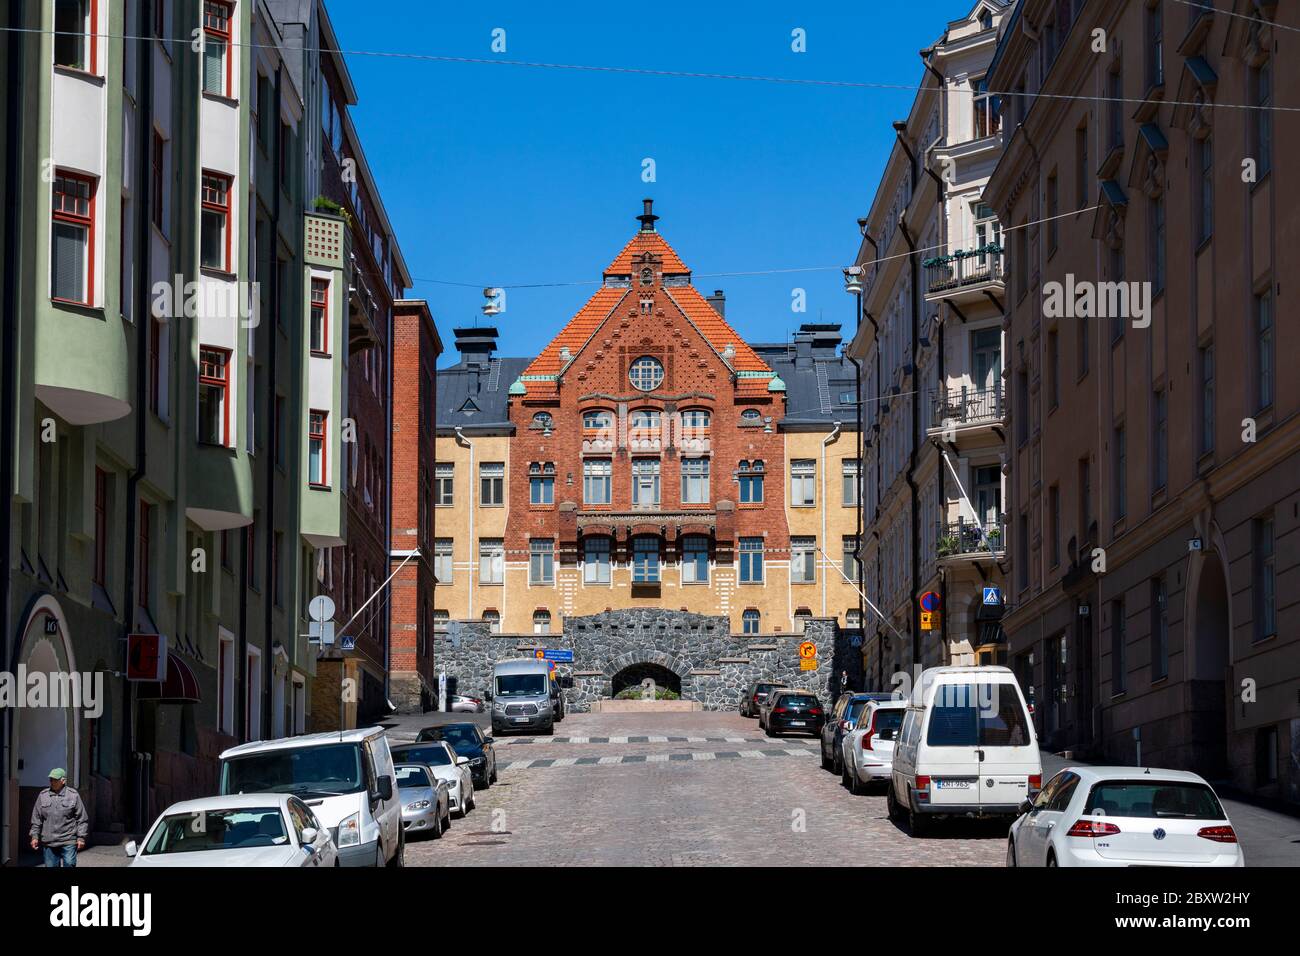 Gli edifici antichi della capitale finlandese, Helsinki, sono stati costruiti durante un lungo periodo di tempo. Ogni edificio mostra l'architettura popolare alla sua epoca. Foto Stock